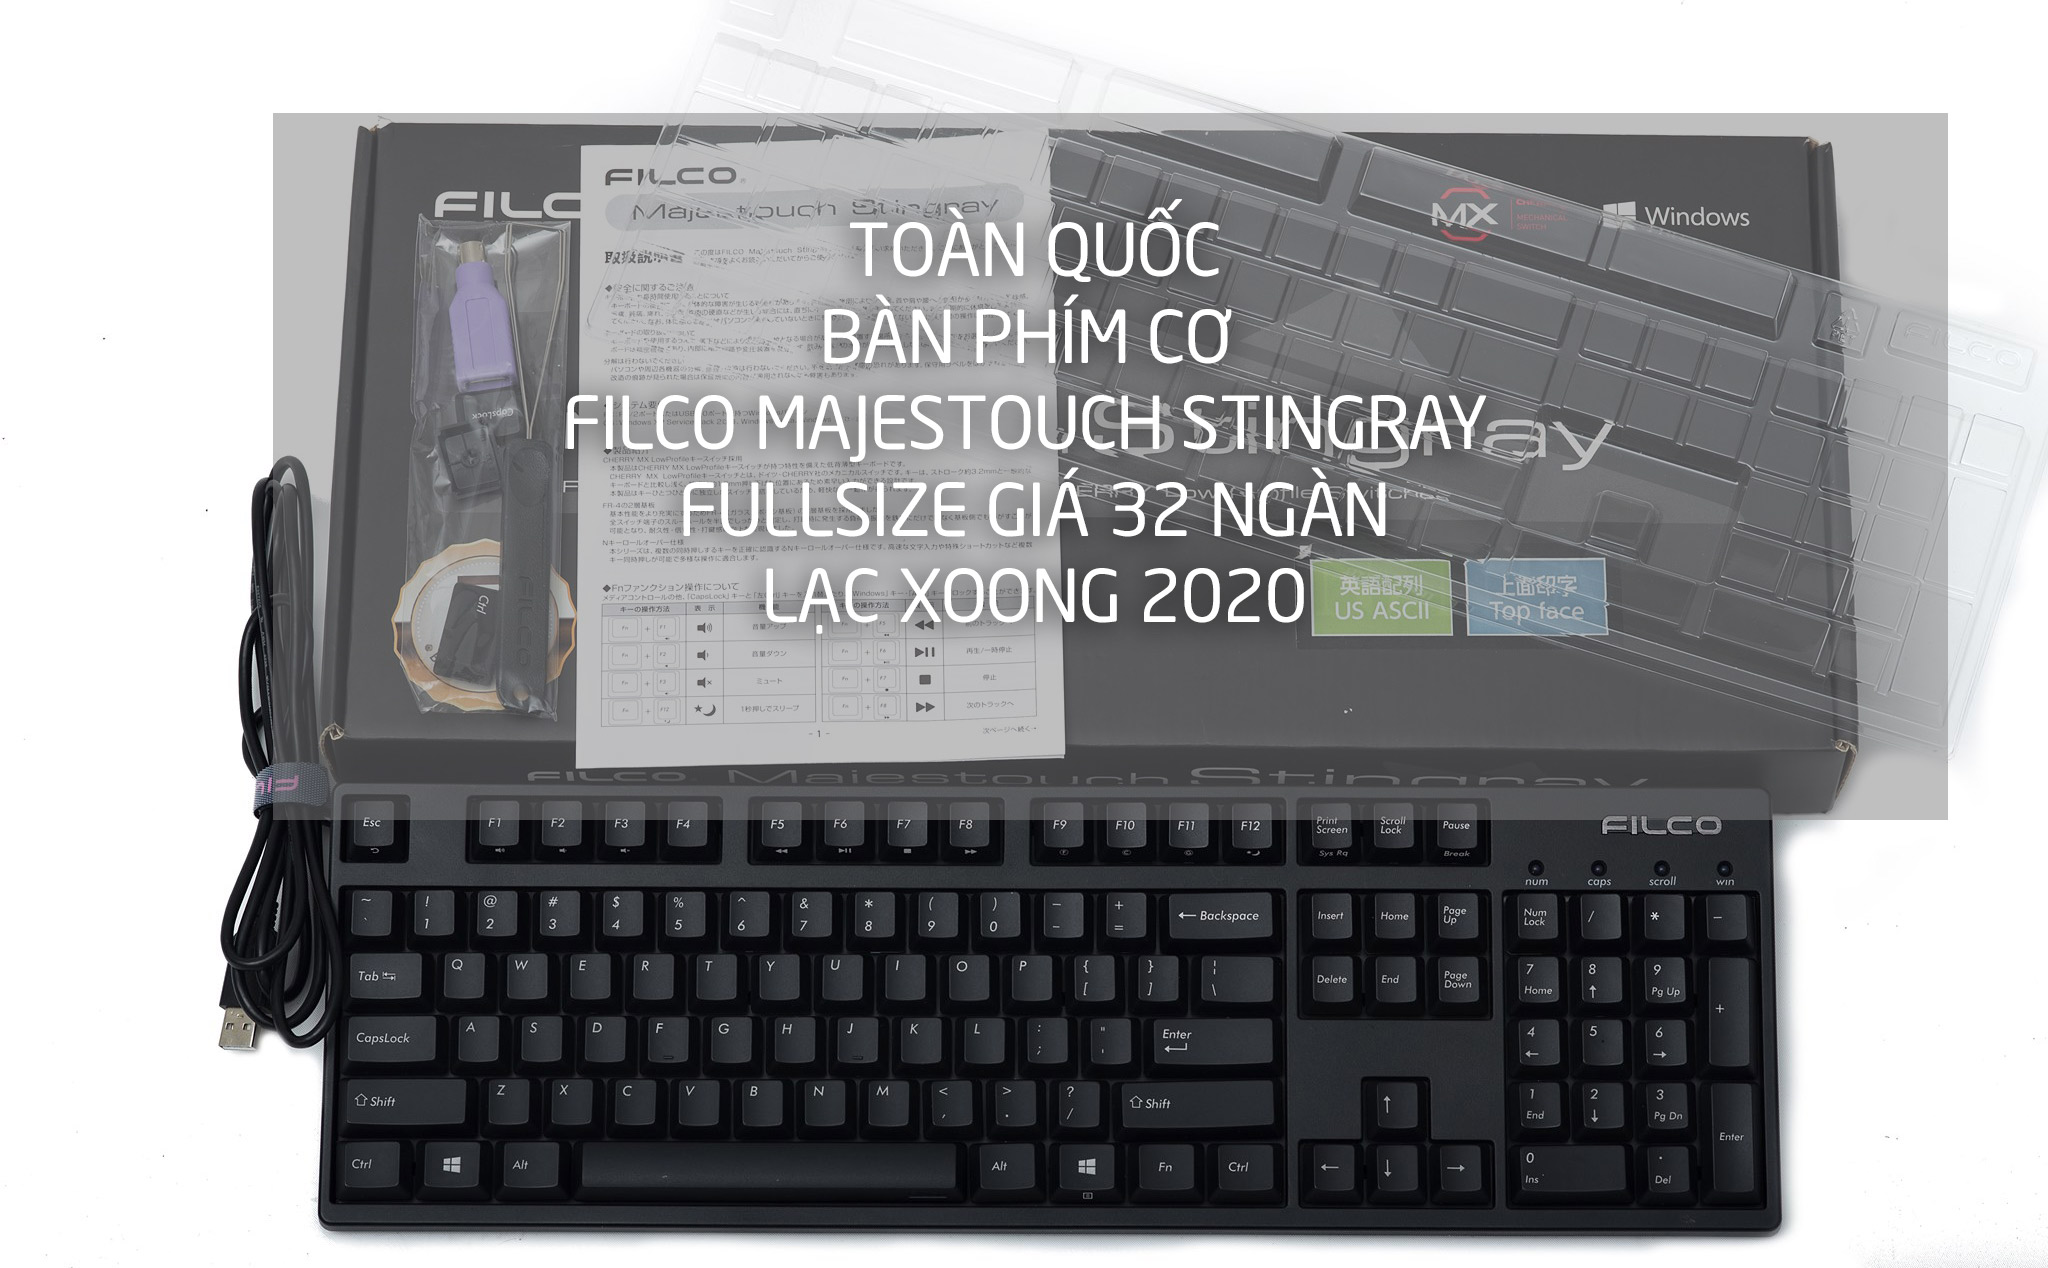 Lạc Xoong 2020: Bàn phím cơ Filco Majestouch Stingray Fullsize giá 32 ngàn